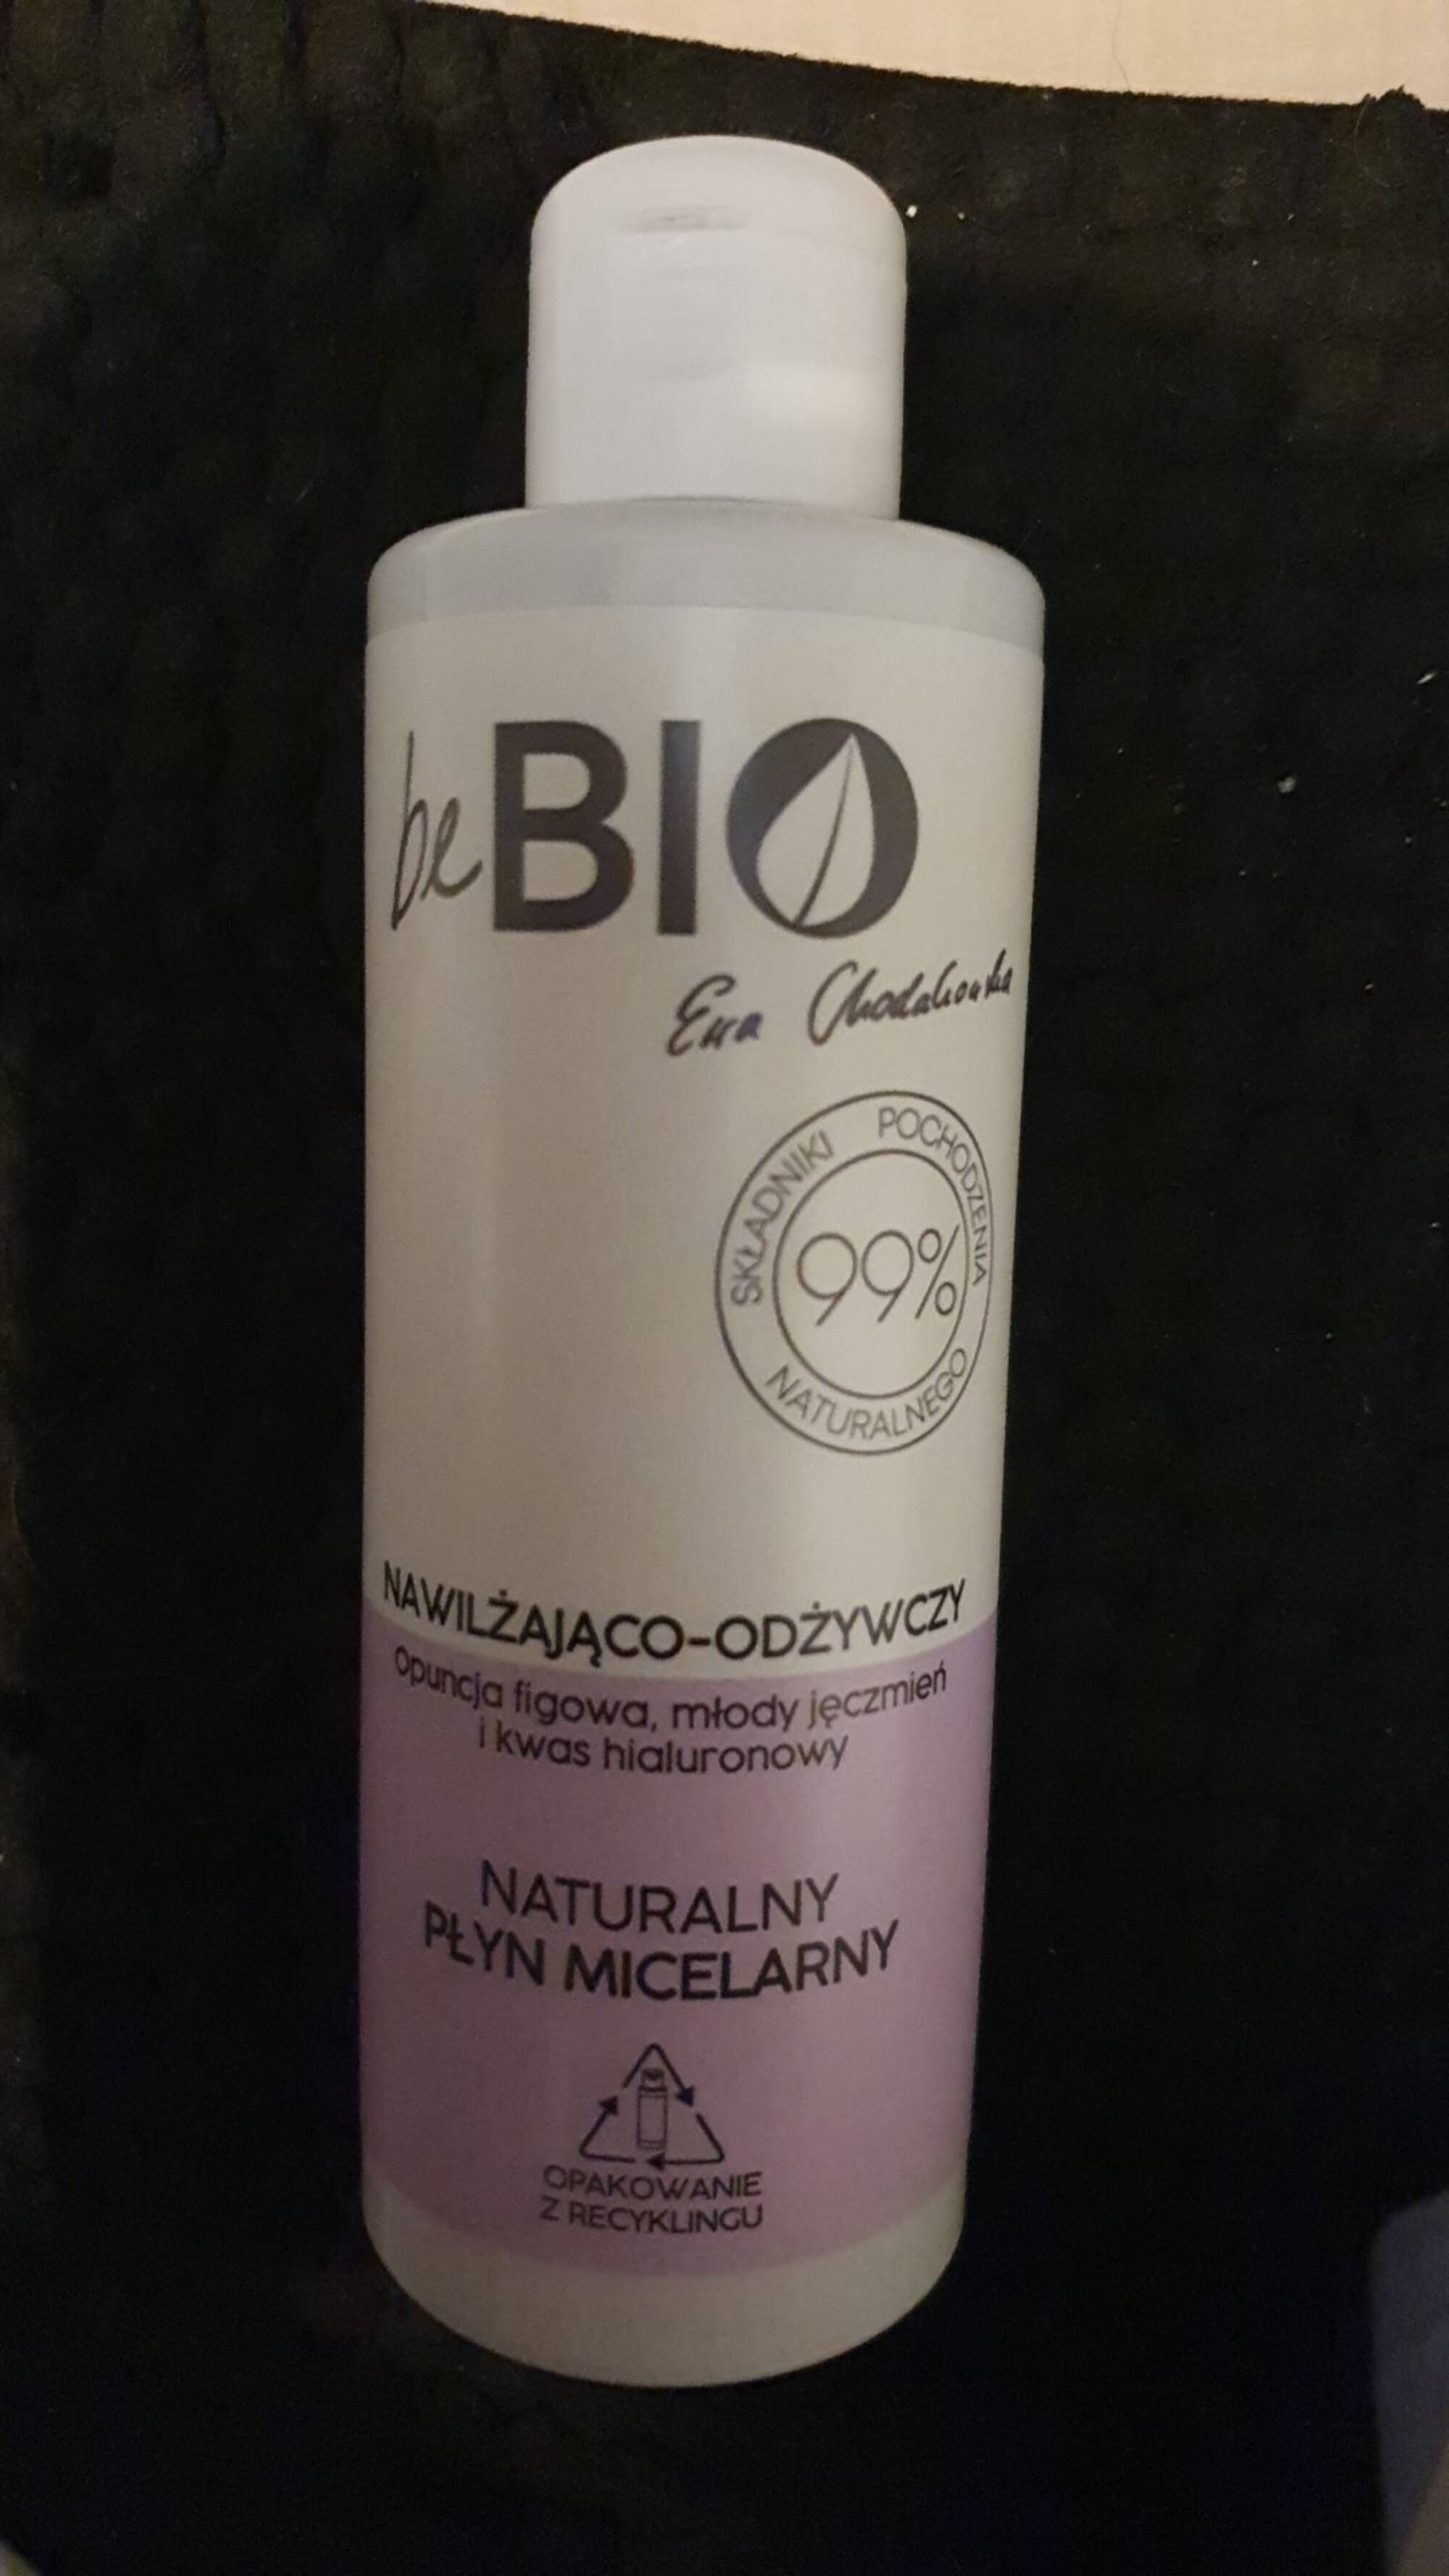 BEBIO - Naturalny płyn micelarny